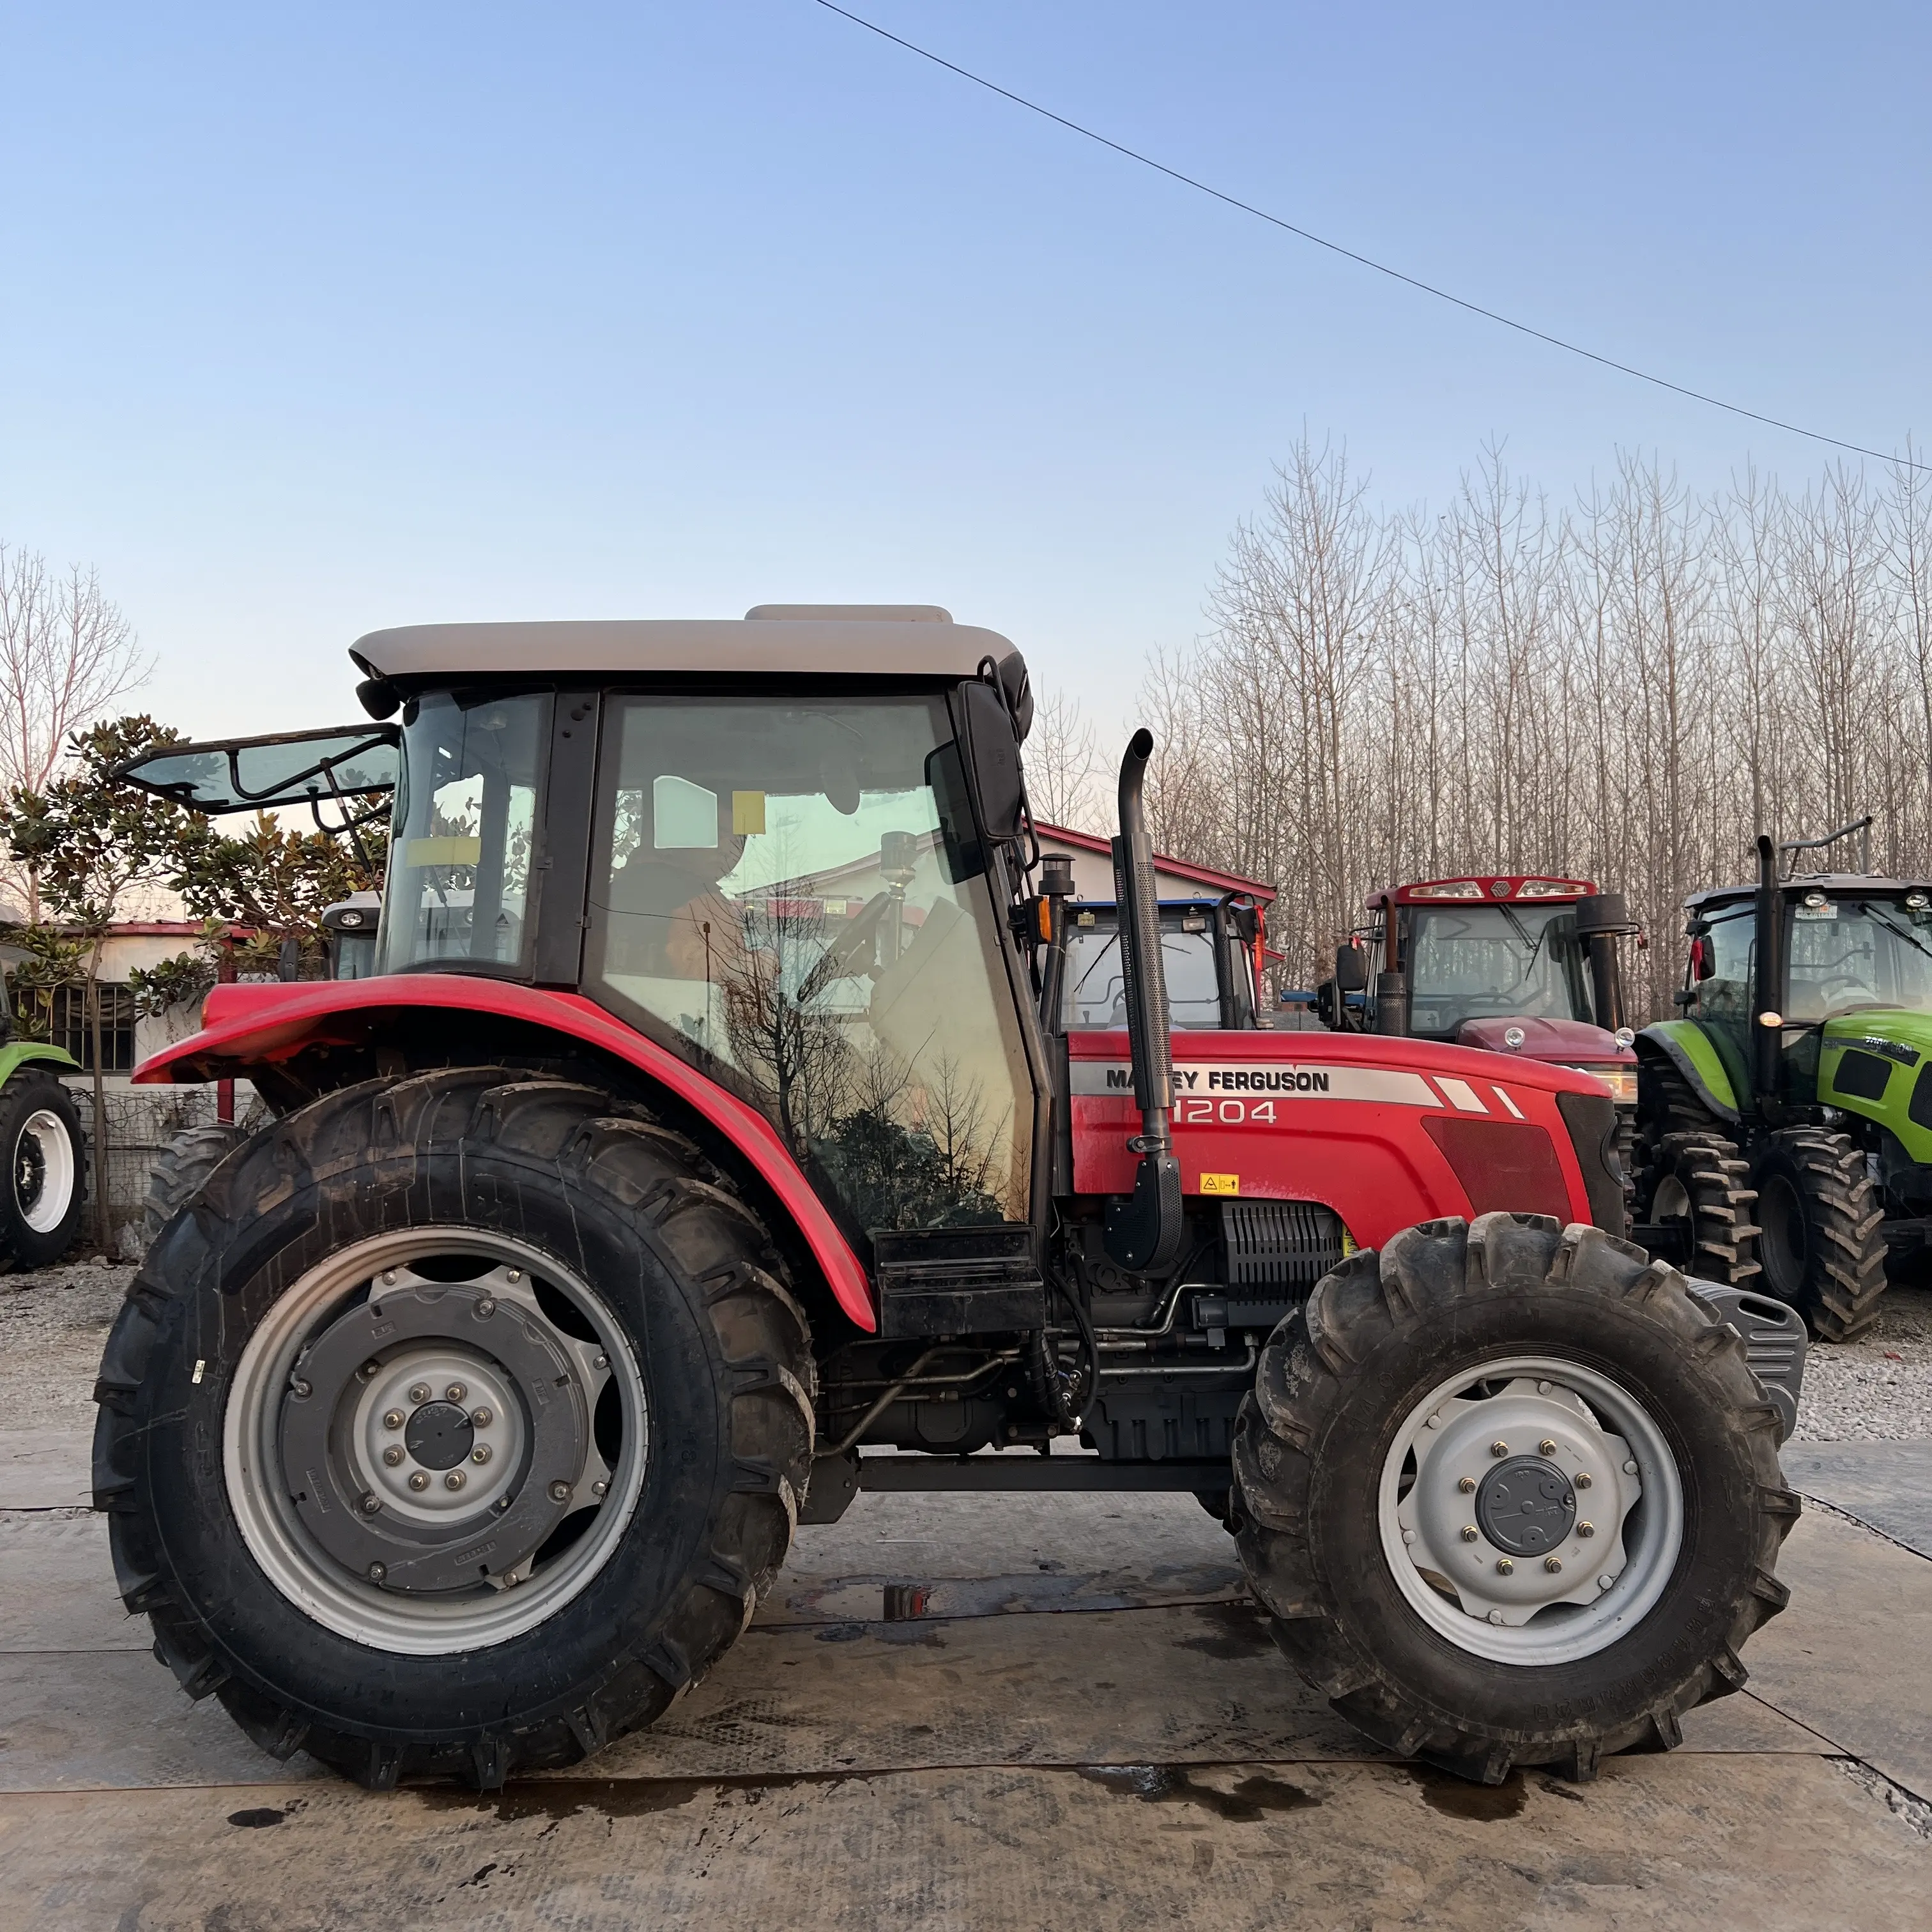 Продажа б/у тракторов Massey Ferguson 290 для сельского хозяйства, а также оборудования для тракторов